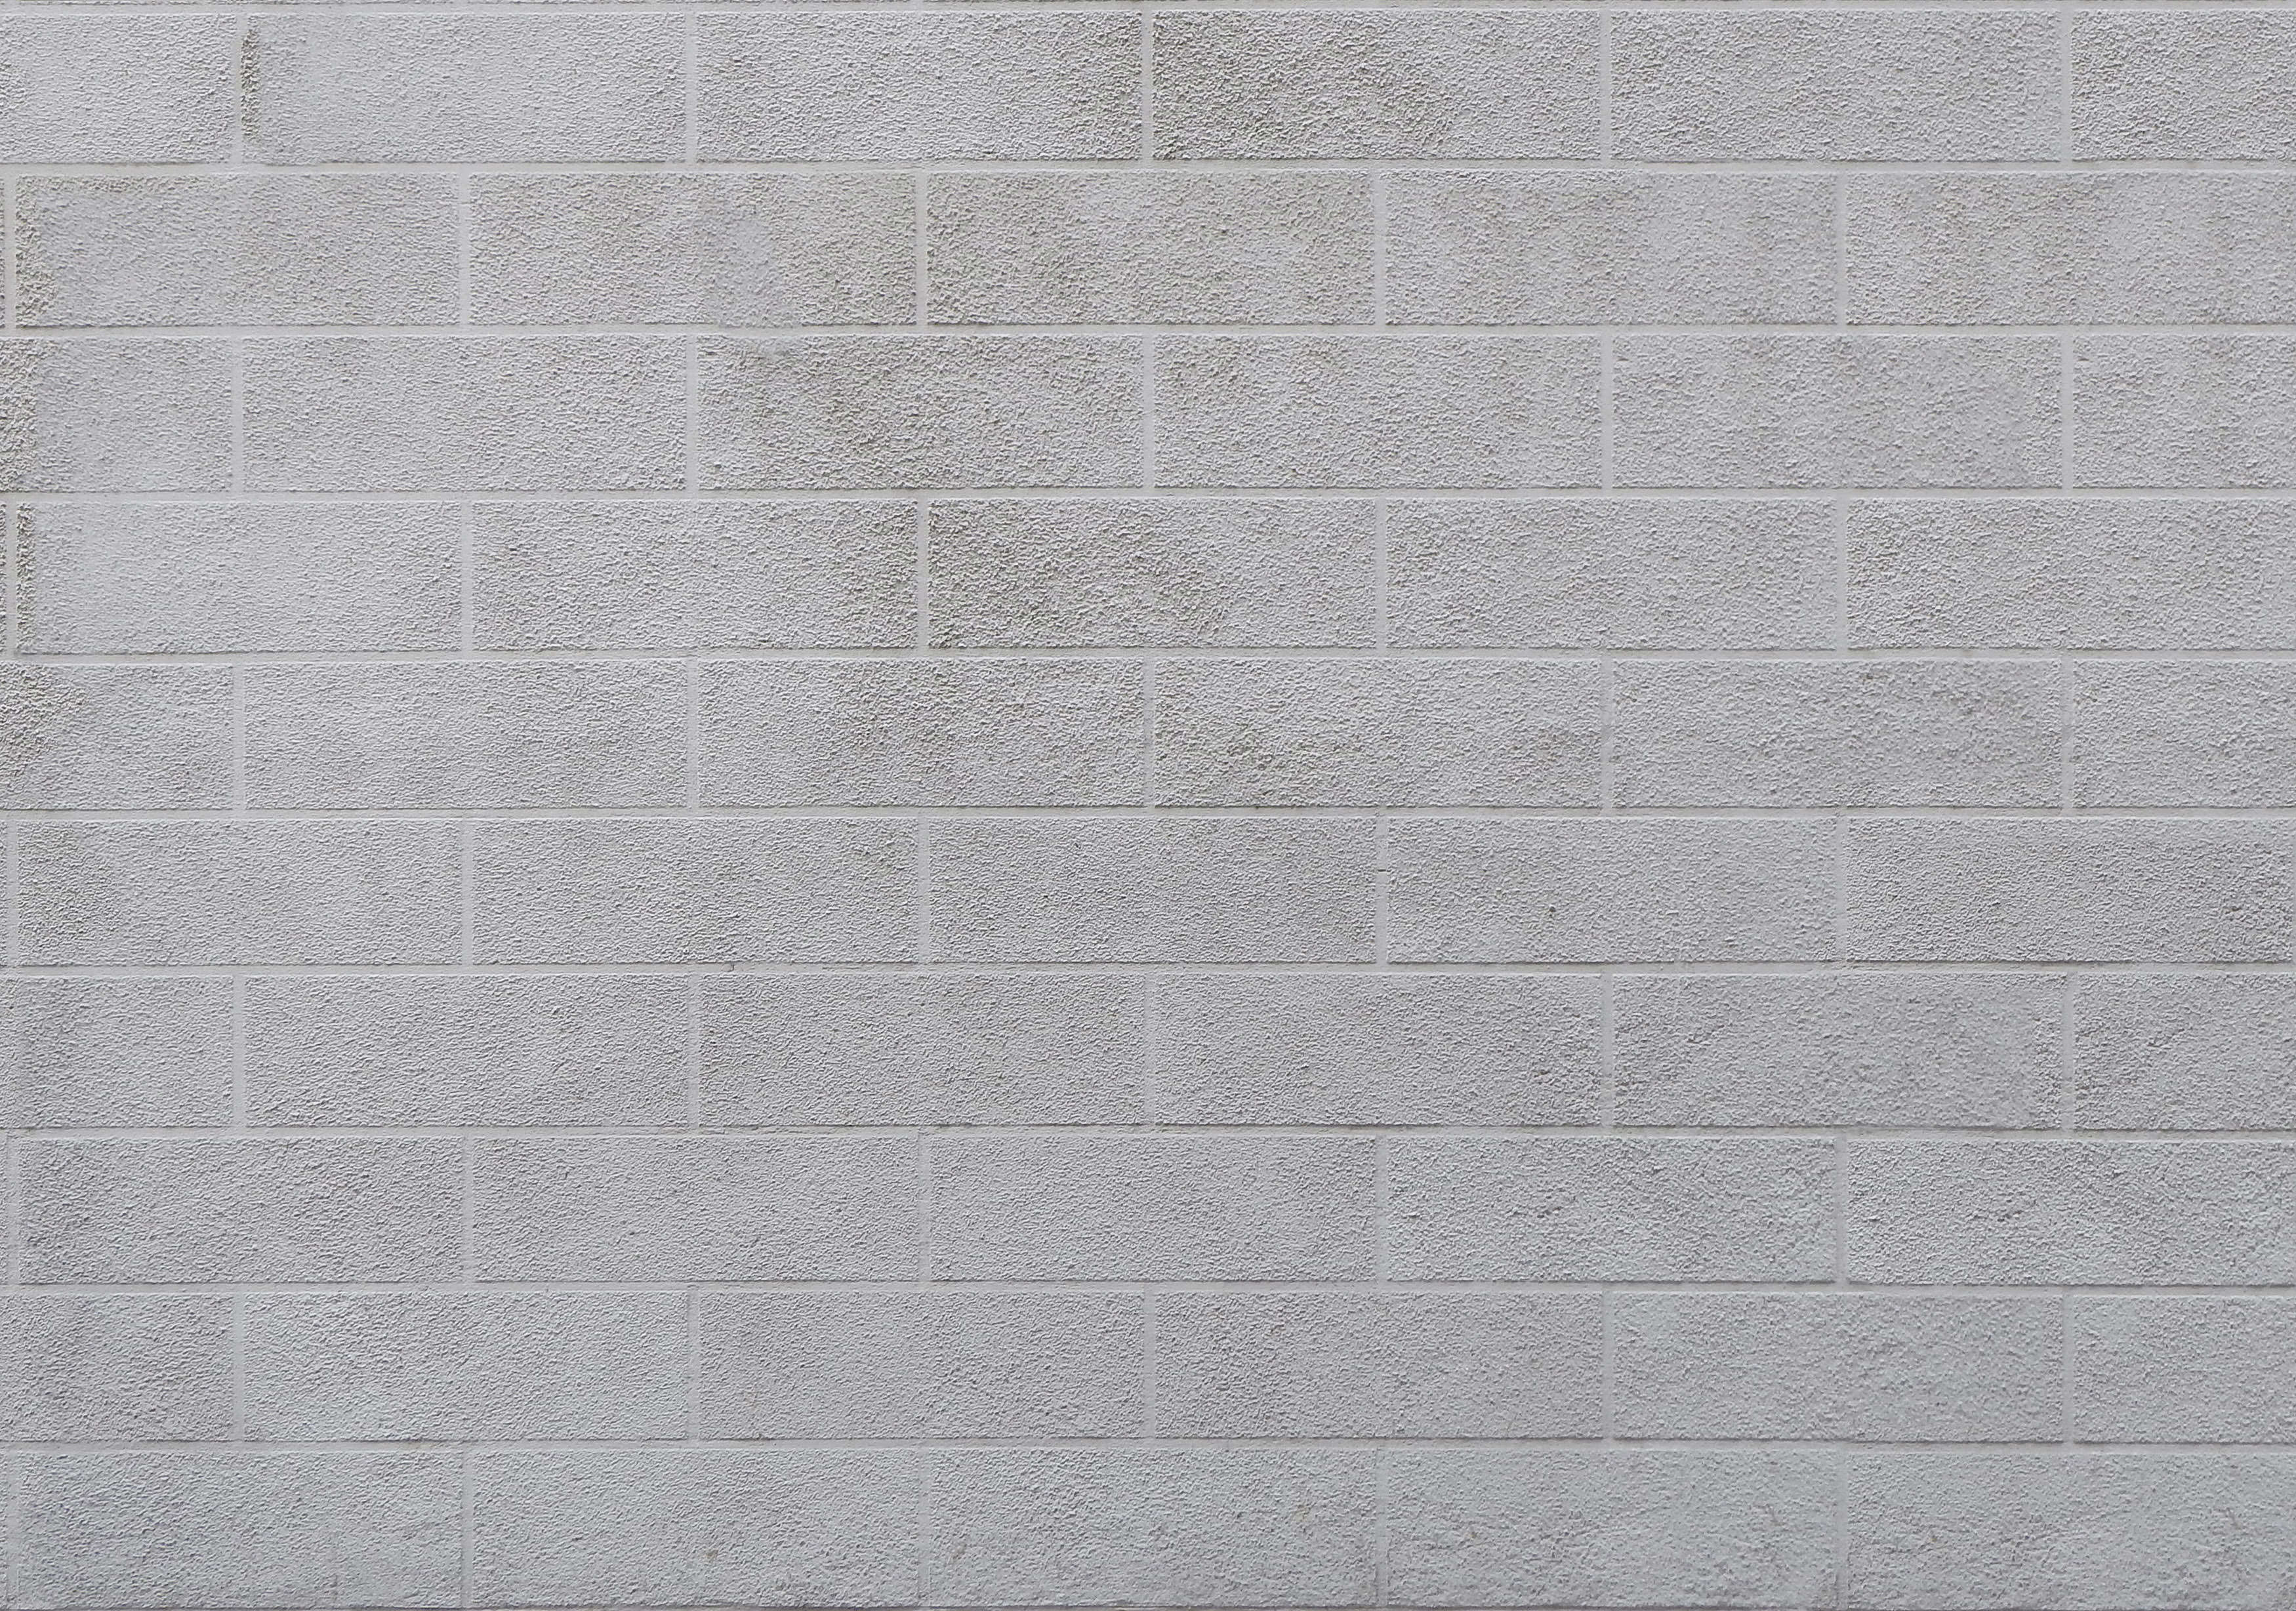 15+ Free White Wall Textures | Free & Premium Creatives